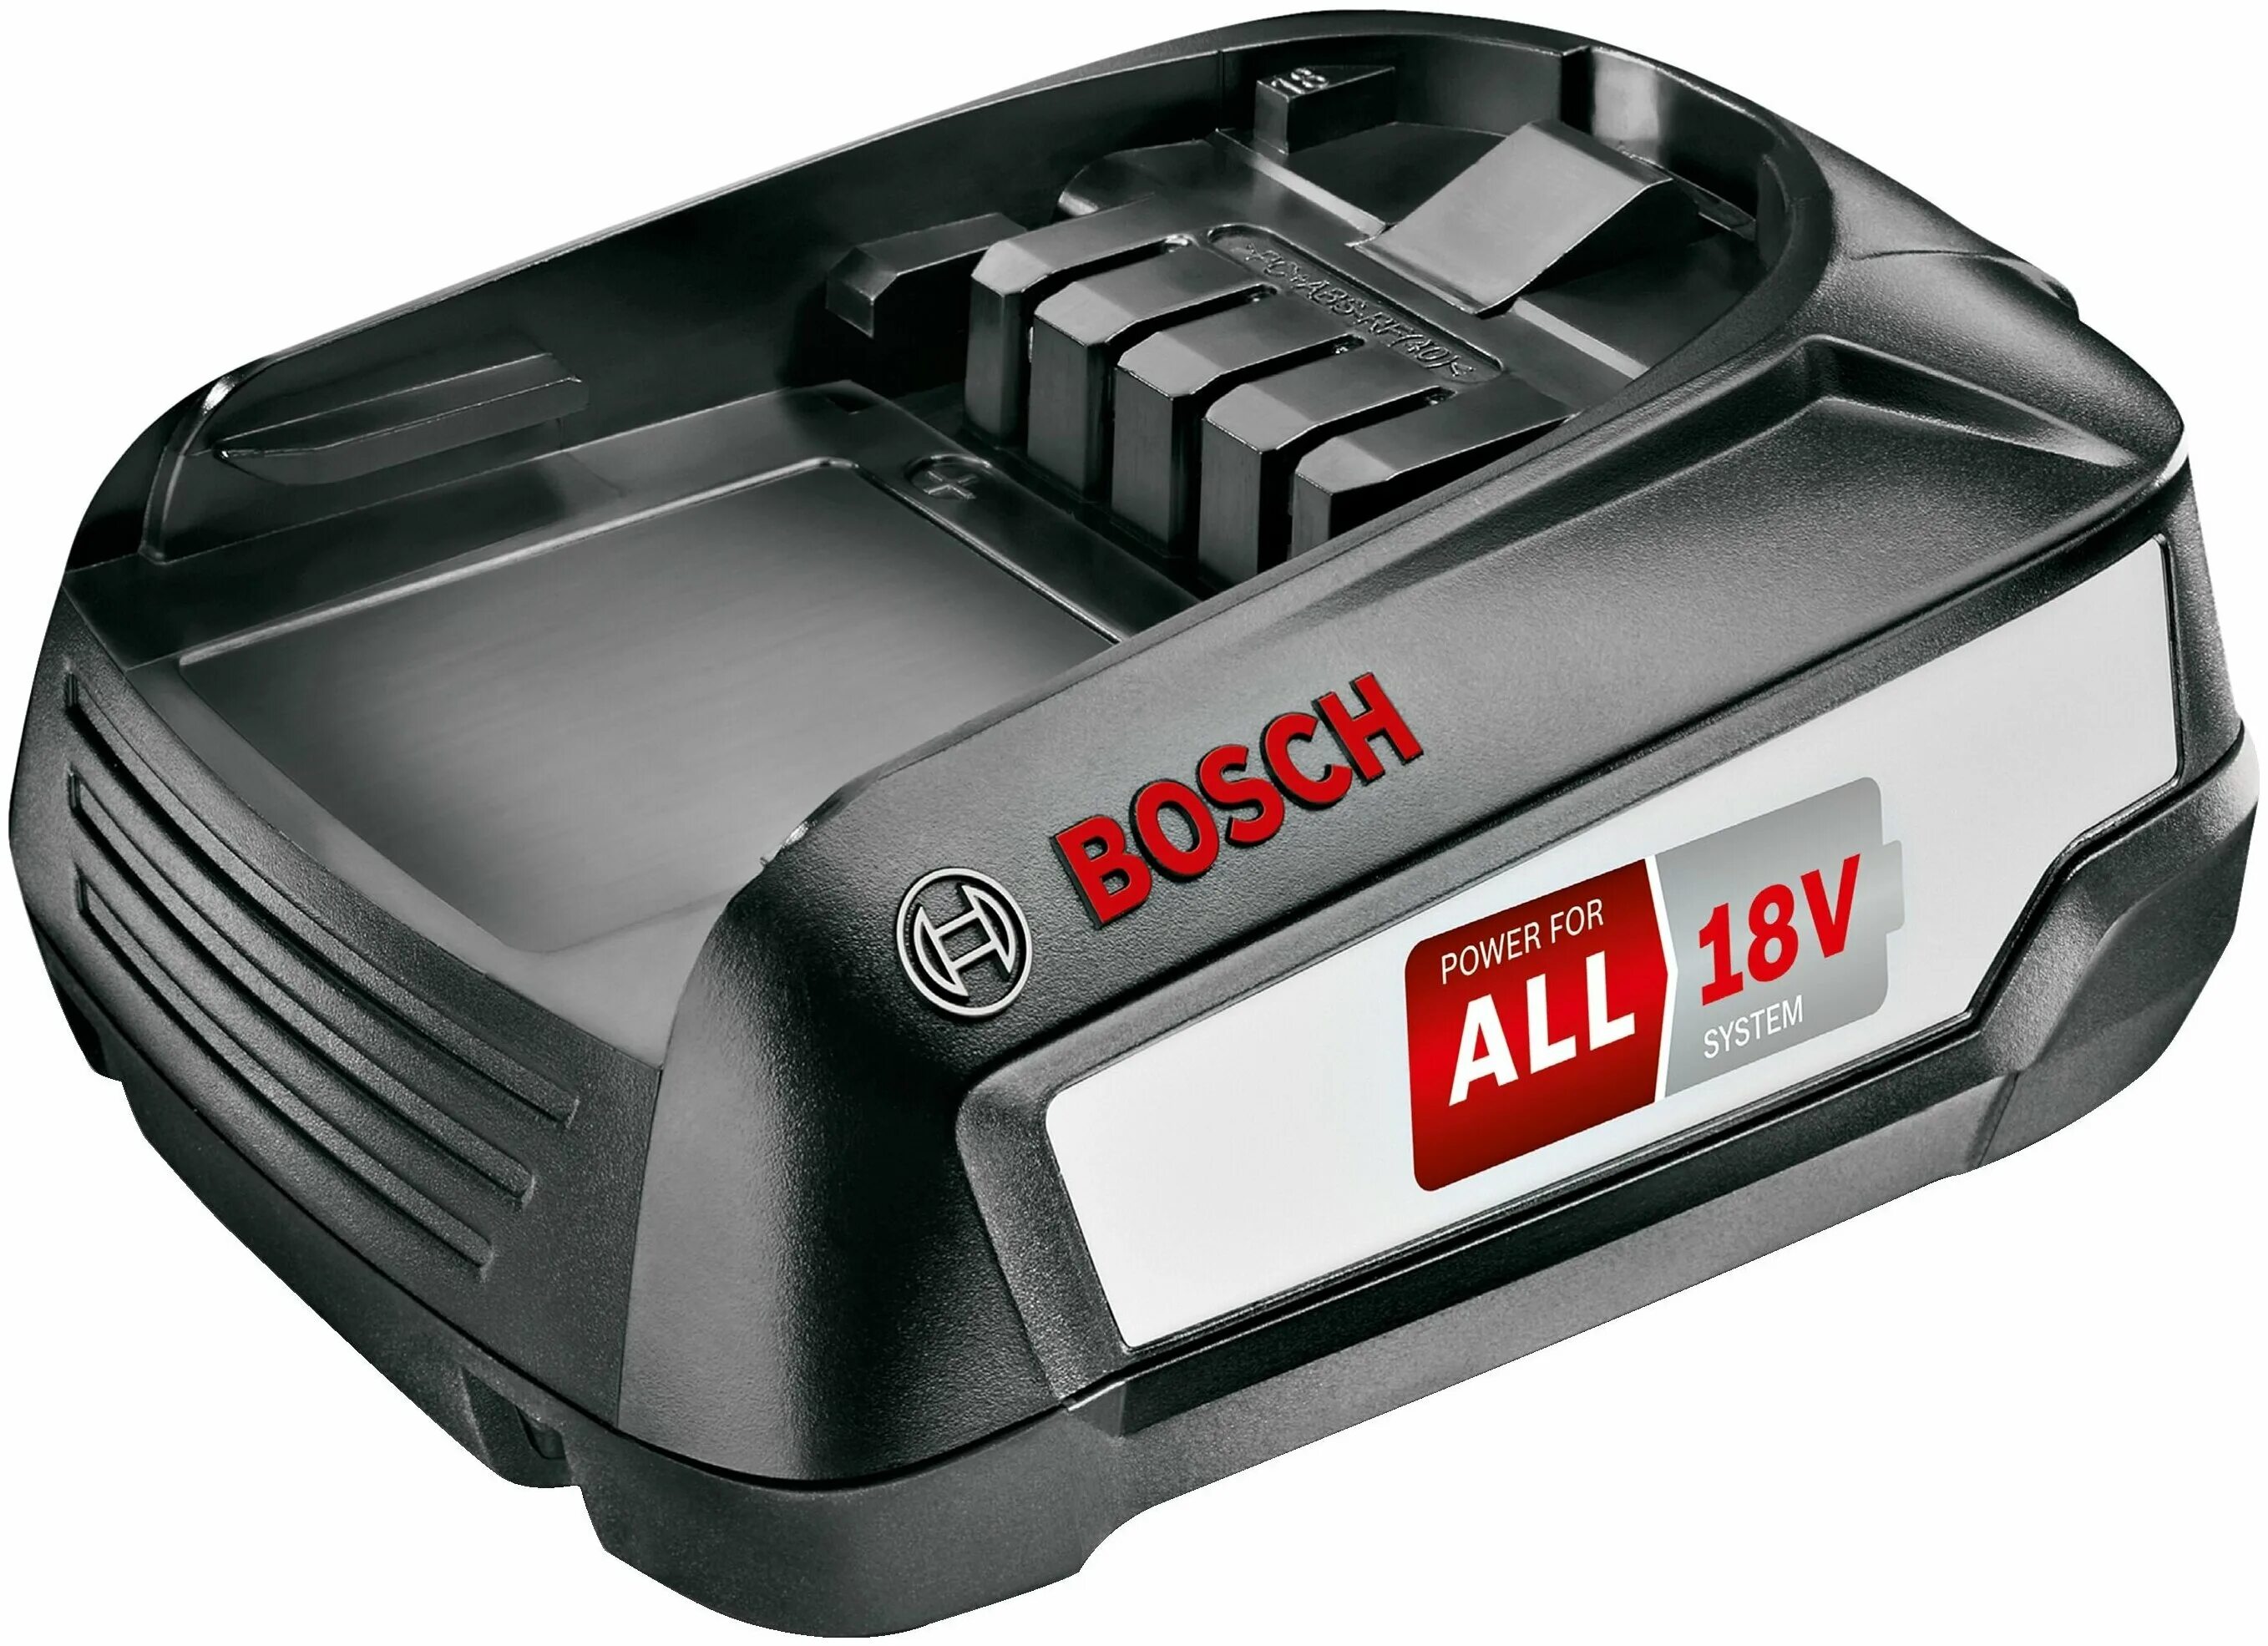 Купить аккумулятор для пылесоса бош. Bosch bcs61pet PROANIMAL. Bosch Power for all 18v аккумулятор. Пылесос Bosch bcs61pet. Bosch 18v 3.0Ah.